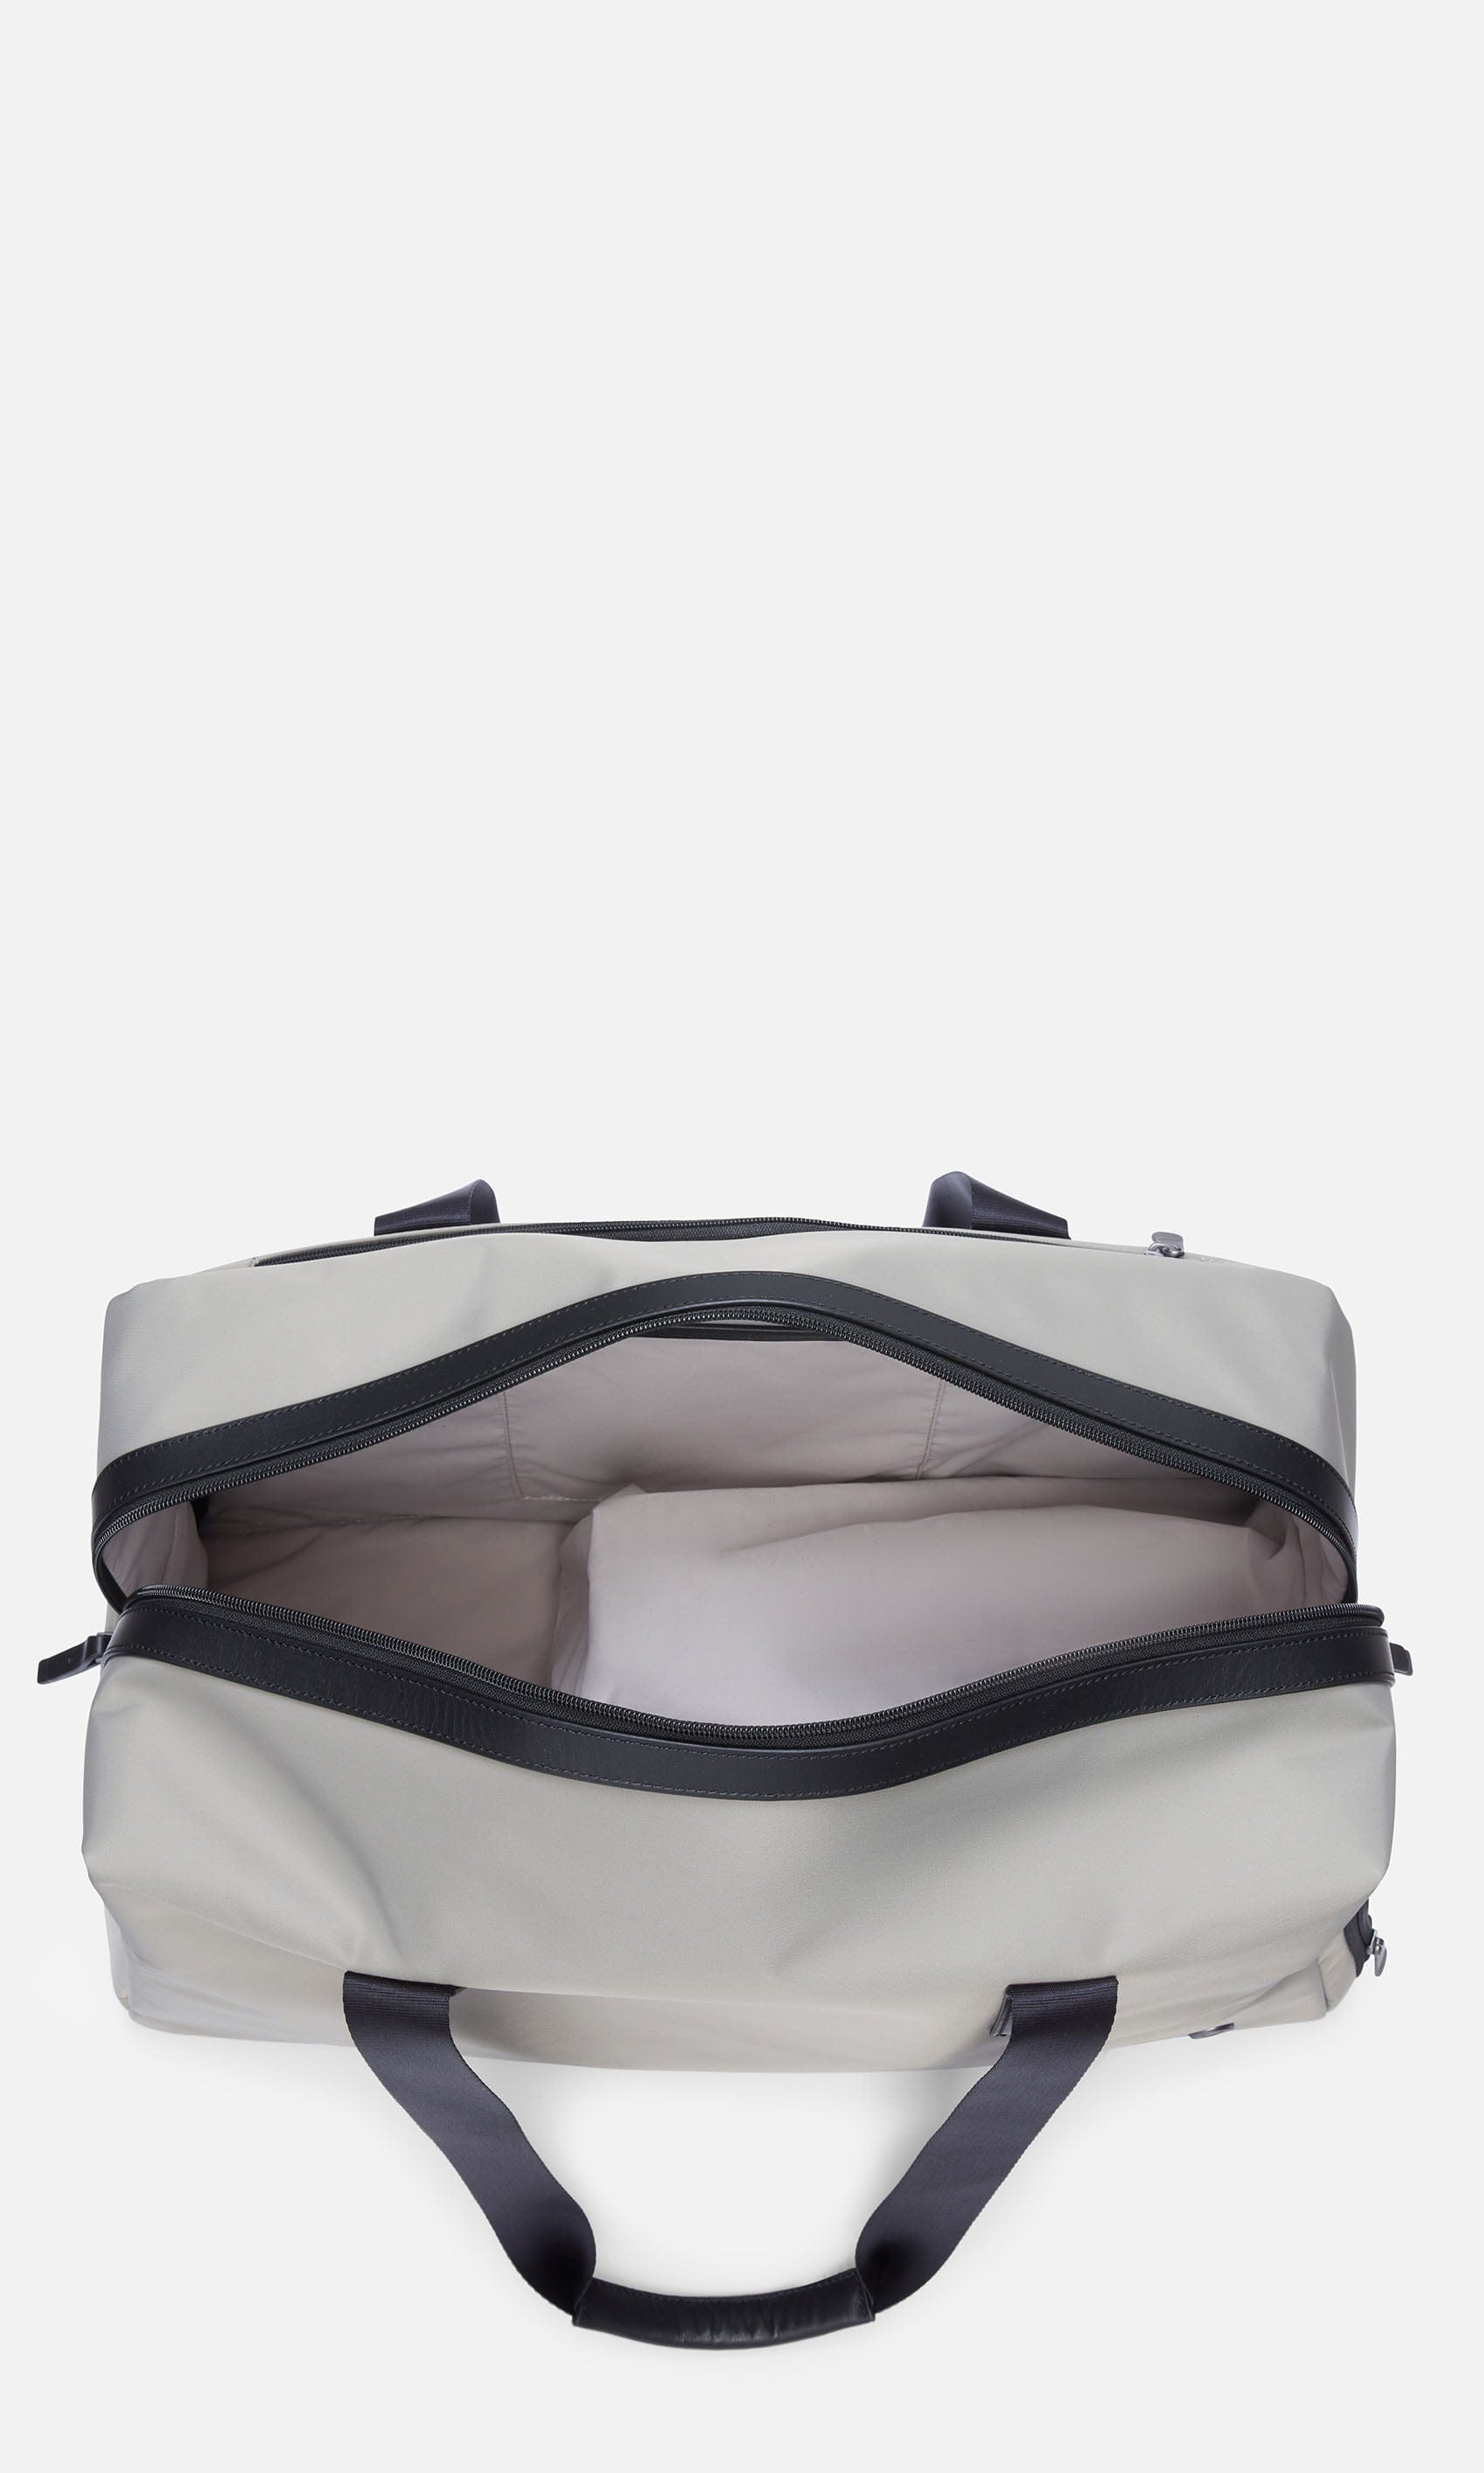 Antler Luggage -  Chelsea weekender in sage - Weekend bags Chelsea Weekend Bag Sage (Green) | Travel Bags | Antler UK